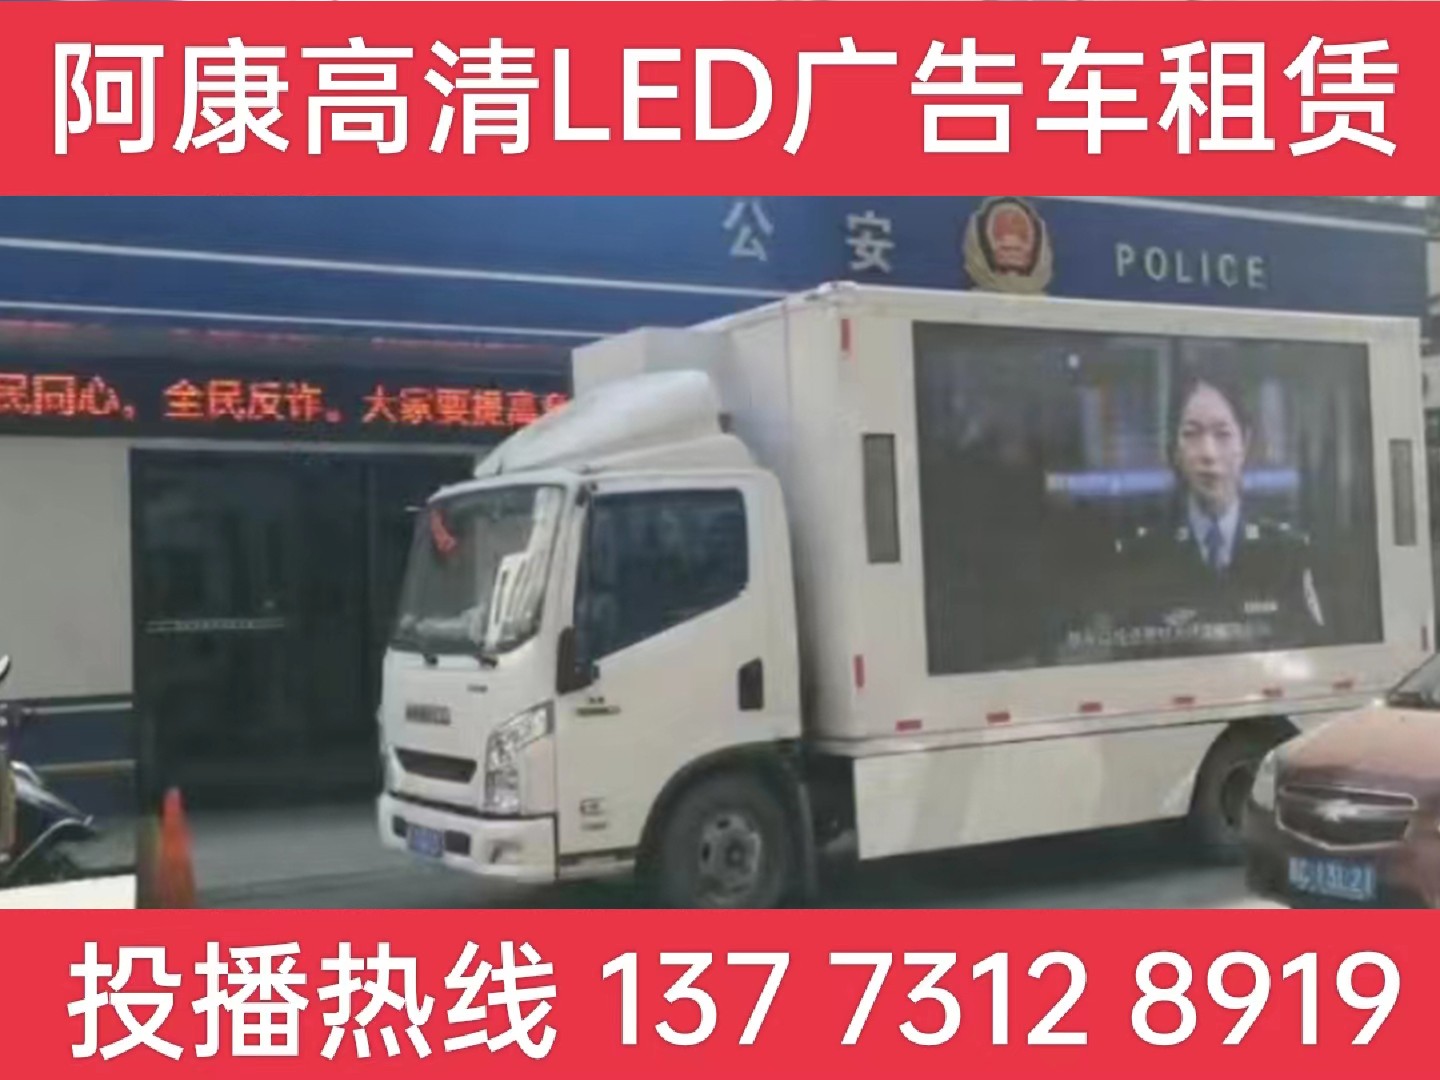 常熟LED广告车租赁-反诈宣传